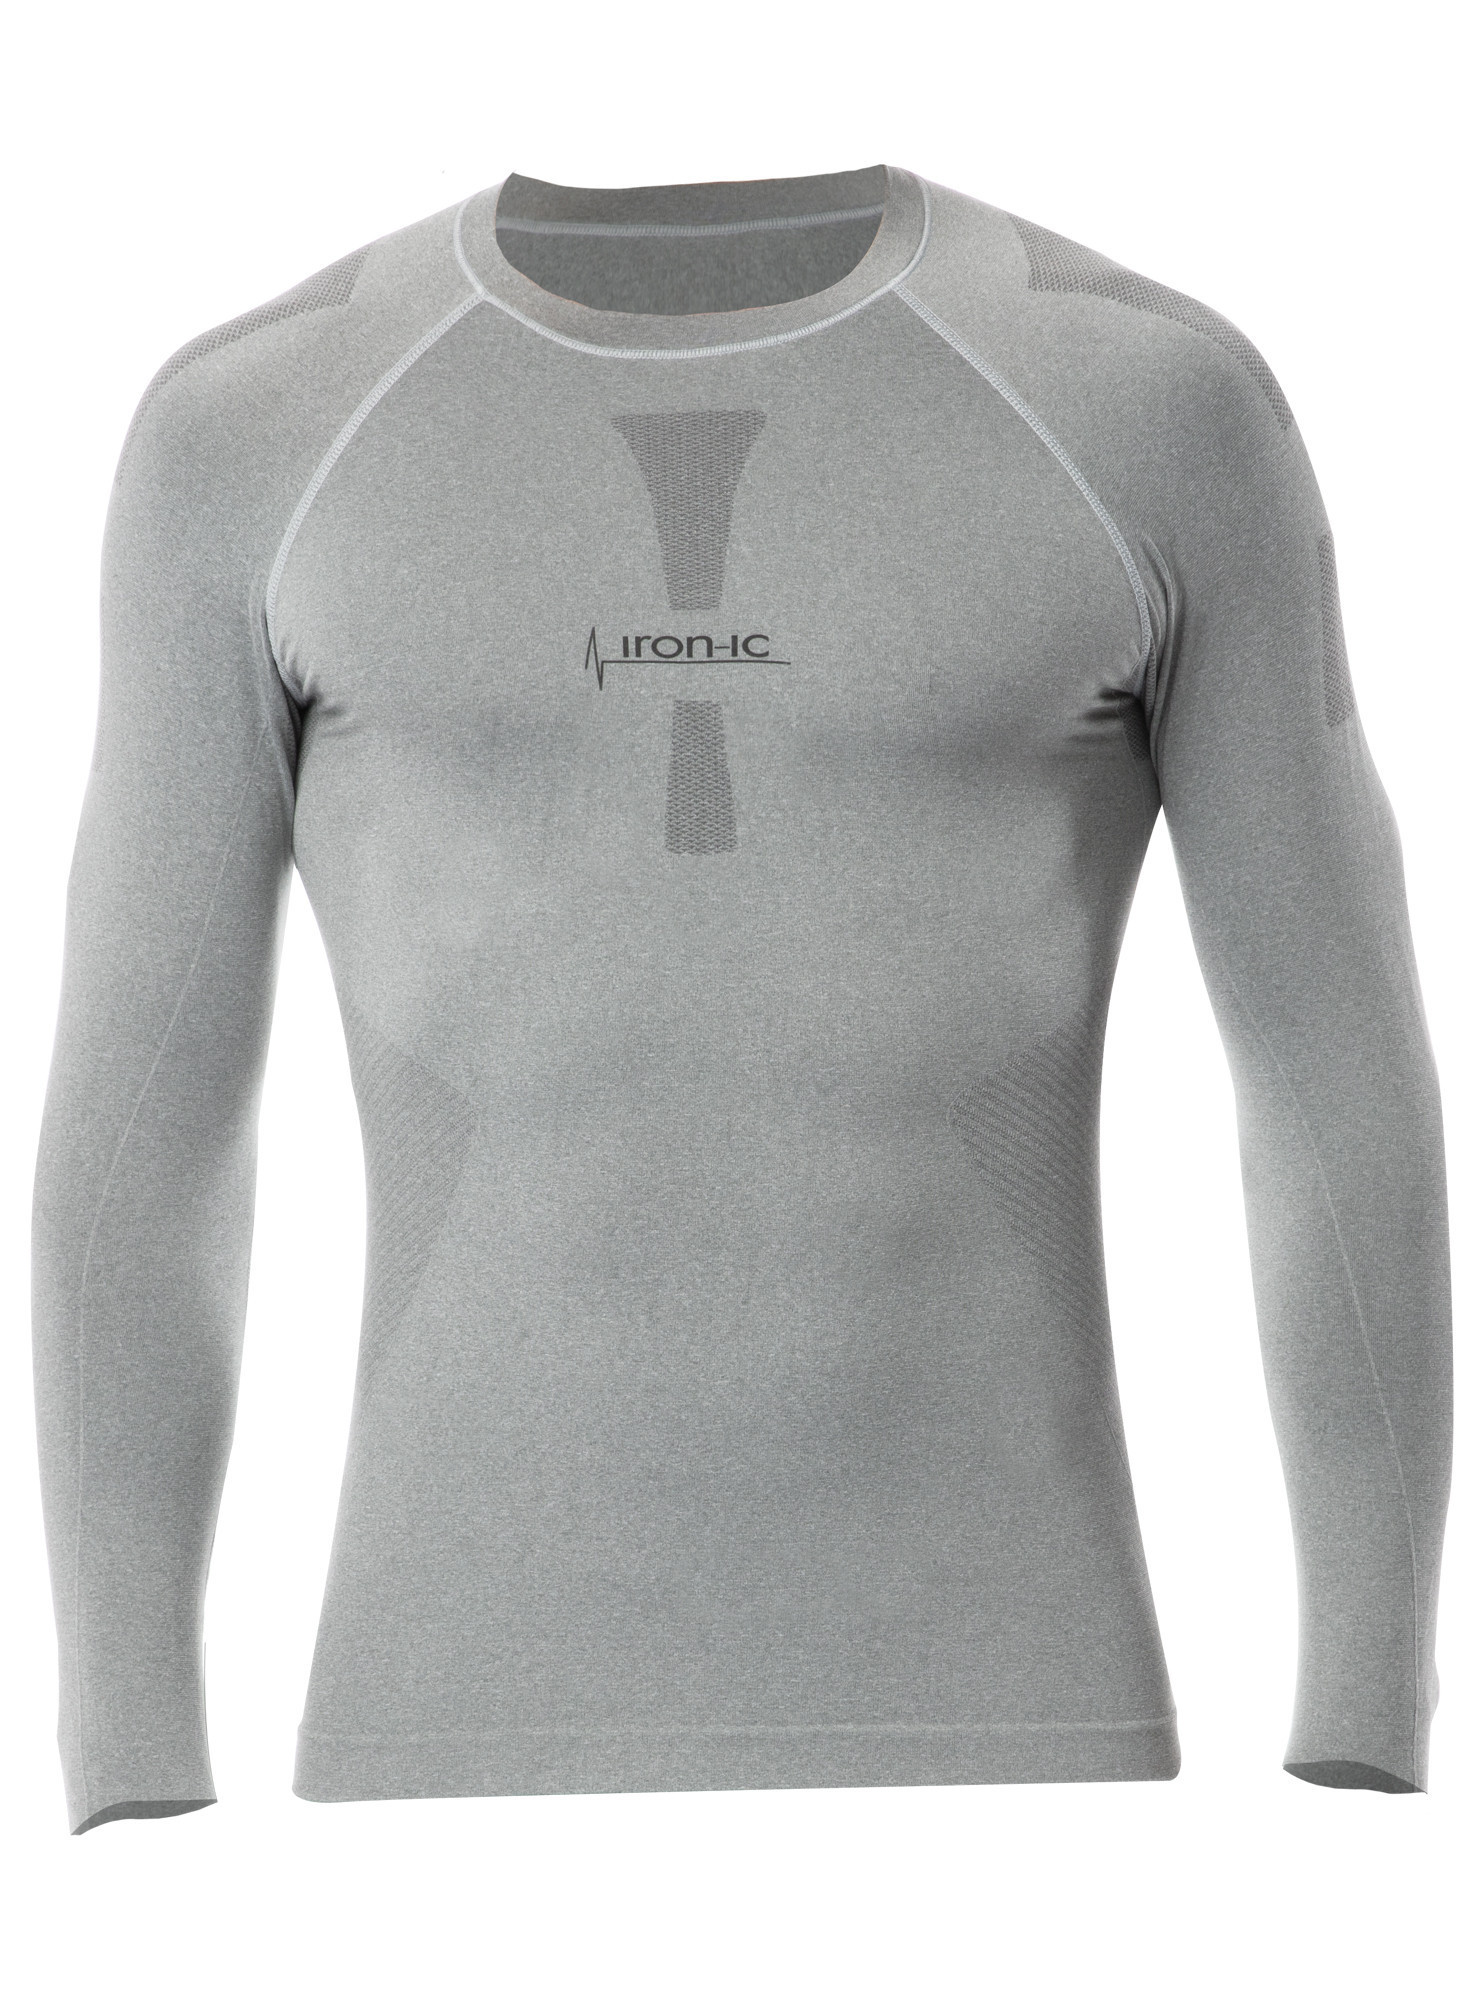 Pánské funkční tričko s dlouhým rukávem IRON-IC - šedá Barva: Šedá-IRN, Velikost: L/XL